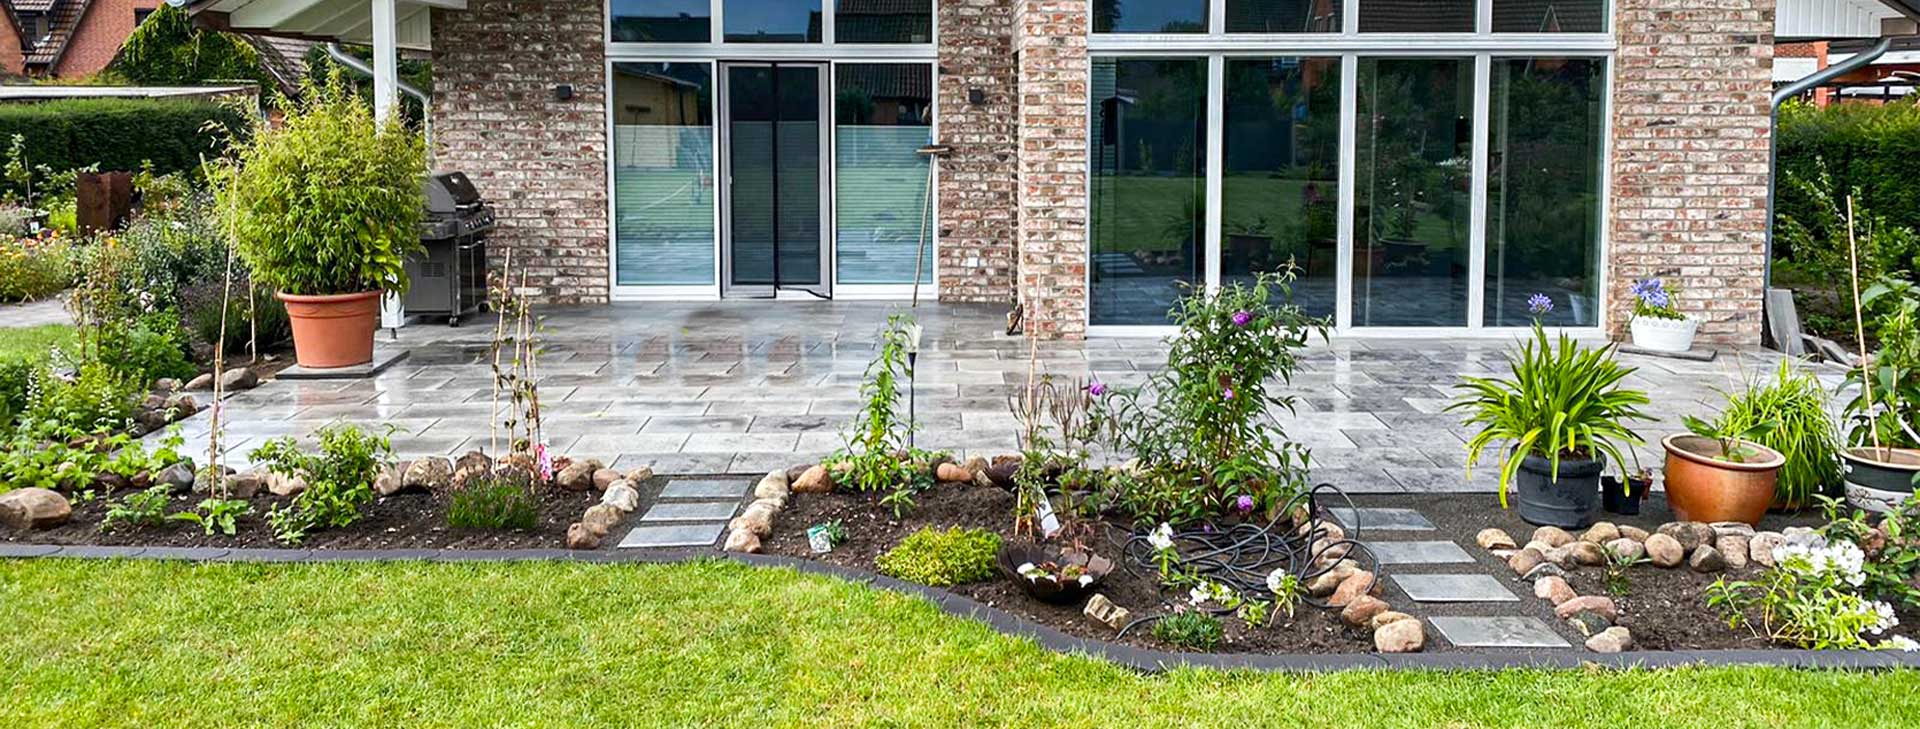 Gartenanlage-Terrassenplatten-Pflasterarbeiten-Zaunarbeiten